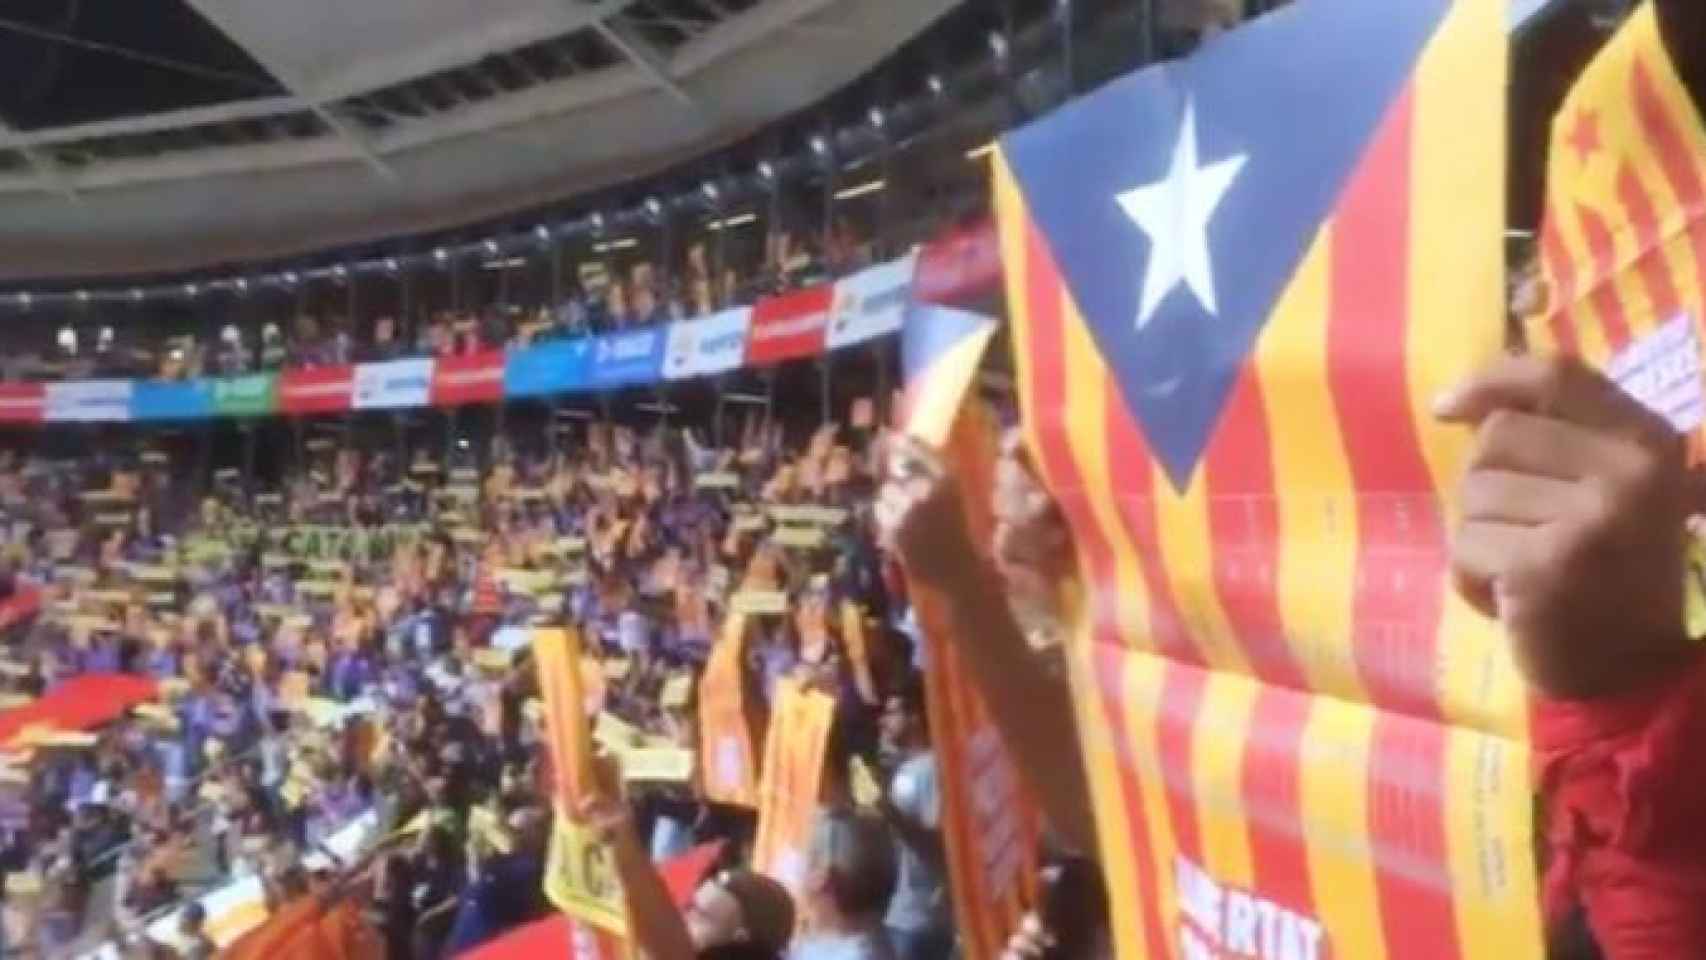 Banderas independentistas en el Tarraco Arena de Tarragona durante el Concurso de Castillos de 2018 / CG